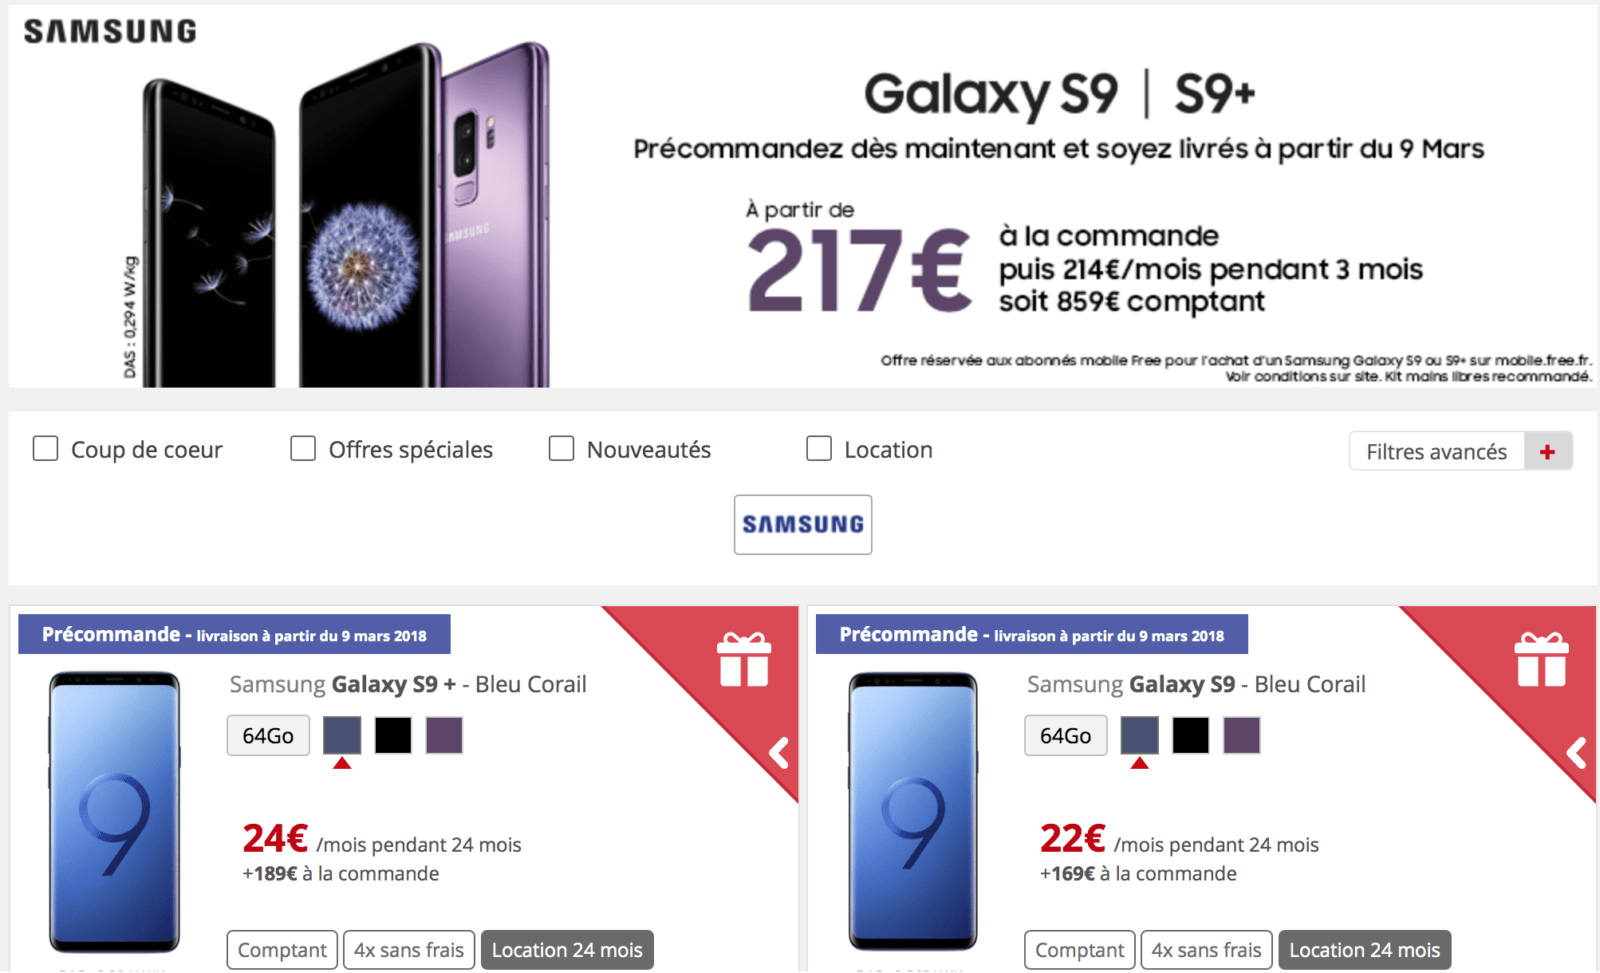  Les Samsung Galaxy S9 et S9+ sont déjà en précommande !